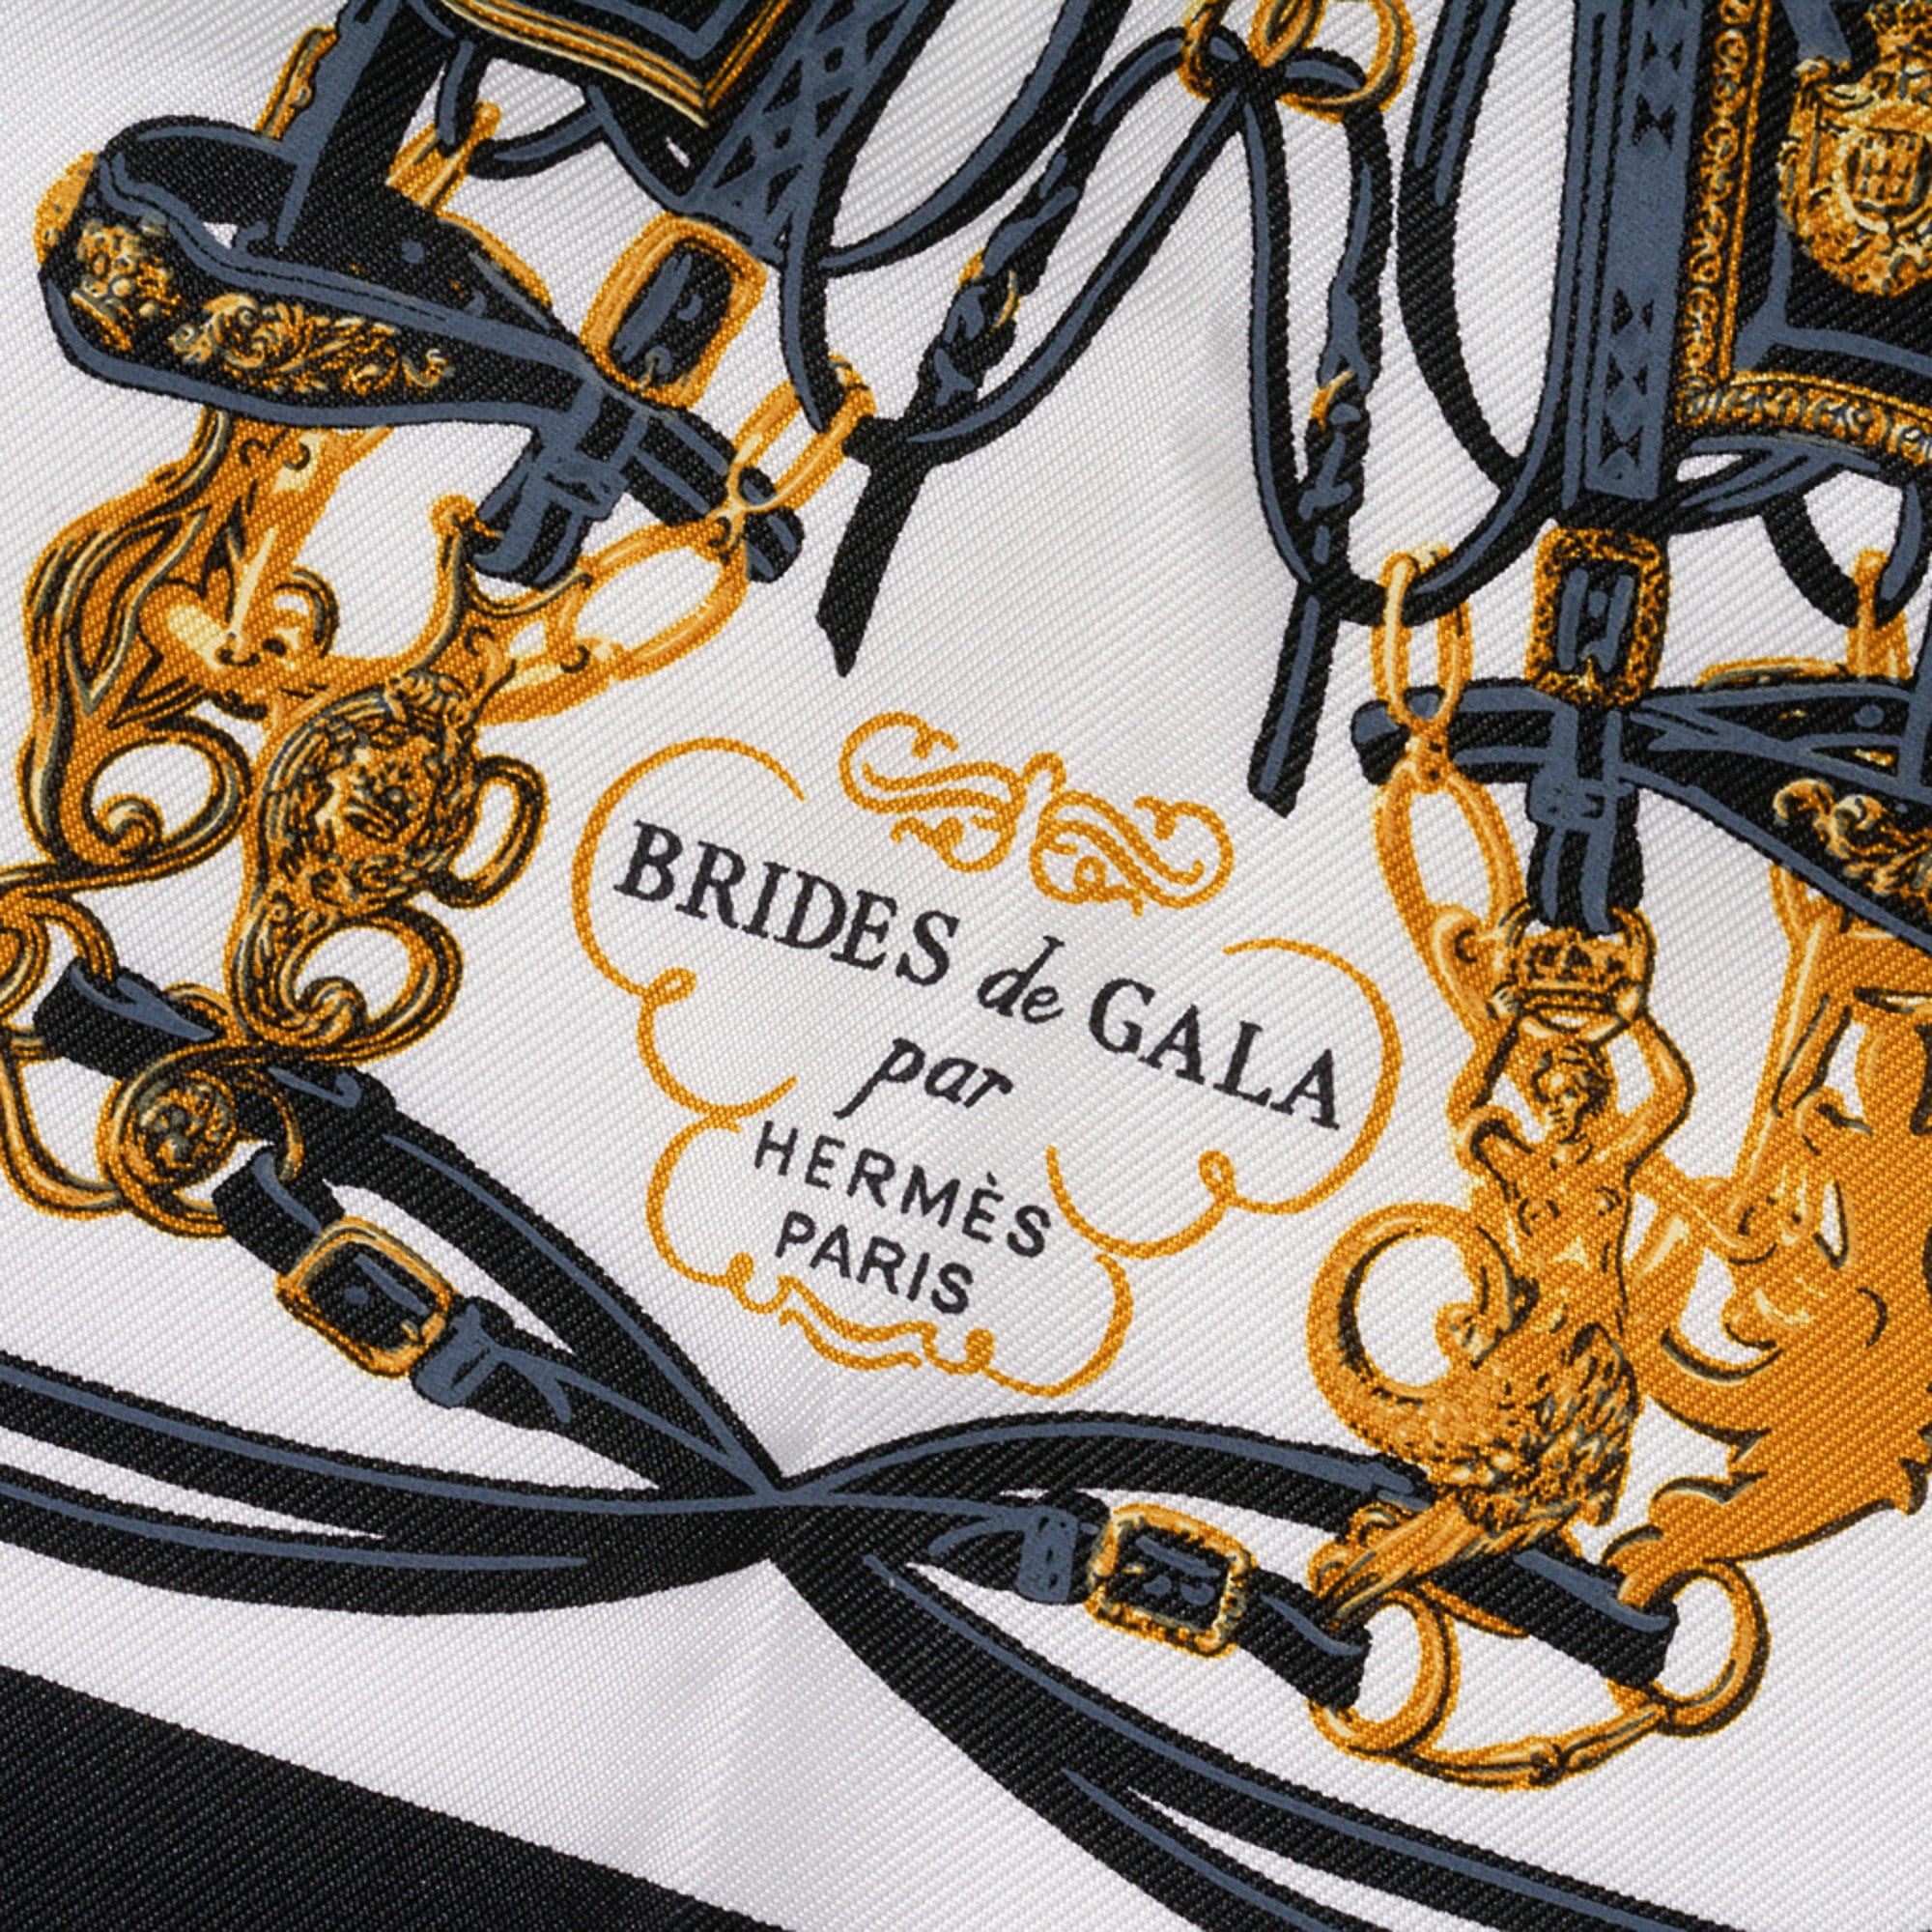 Hermes Scarf Nano Brides de Gala Noir / Blanc / Or New w/ Box